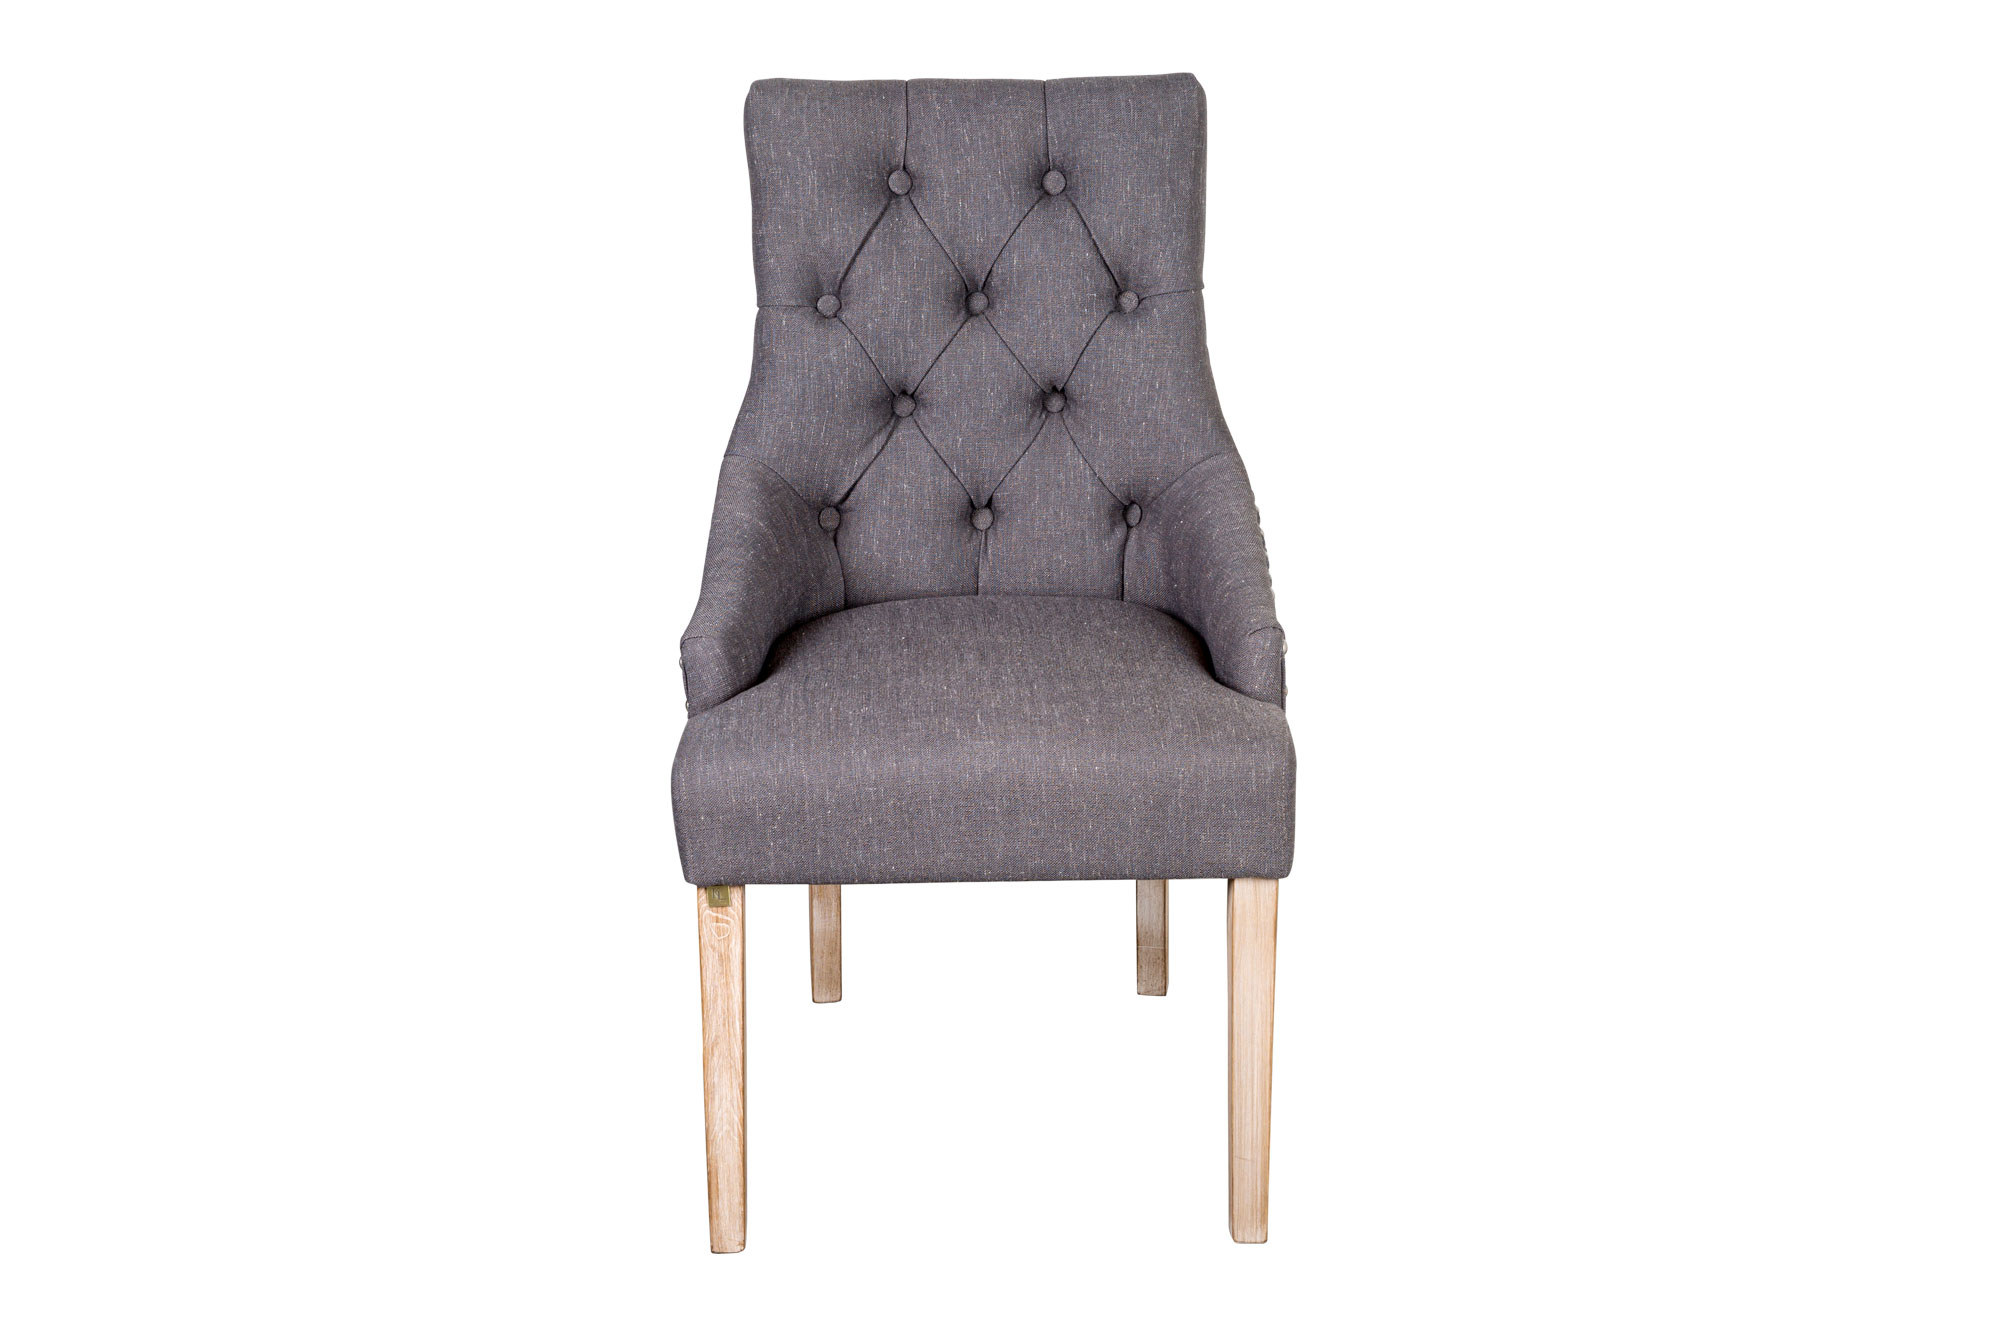 Linda Chair Grey Linen